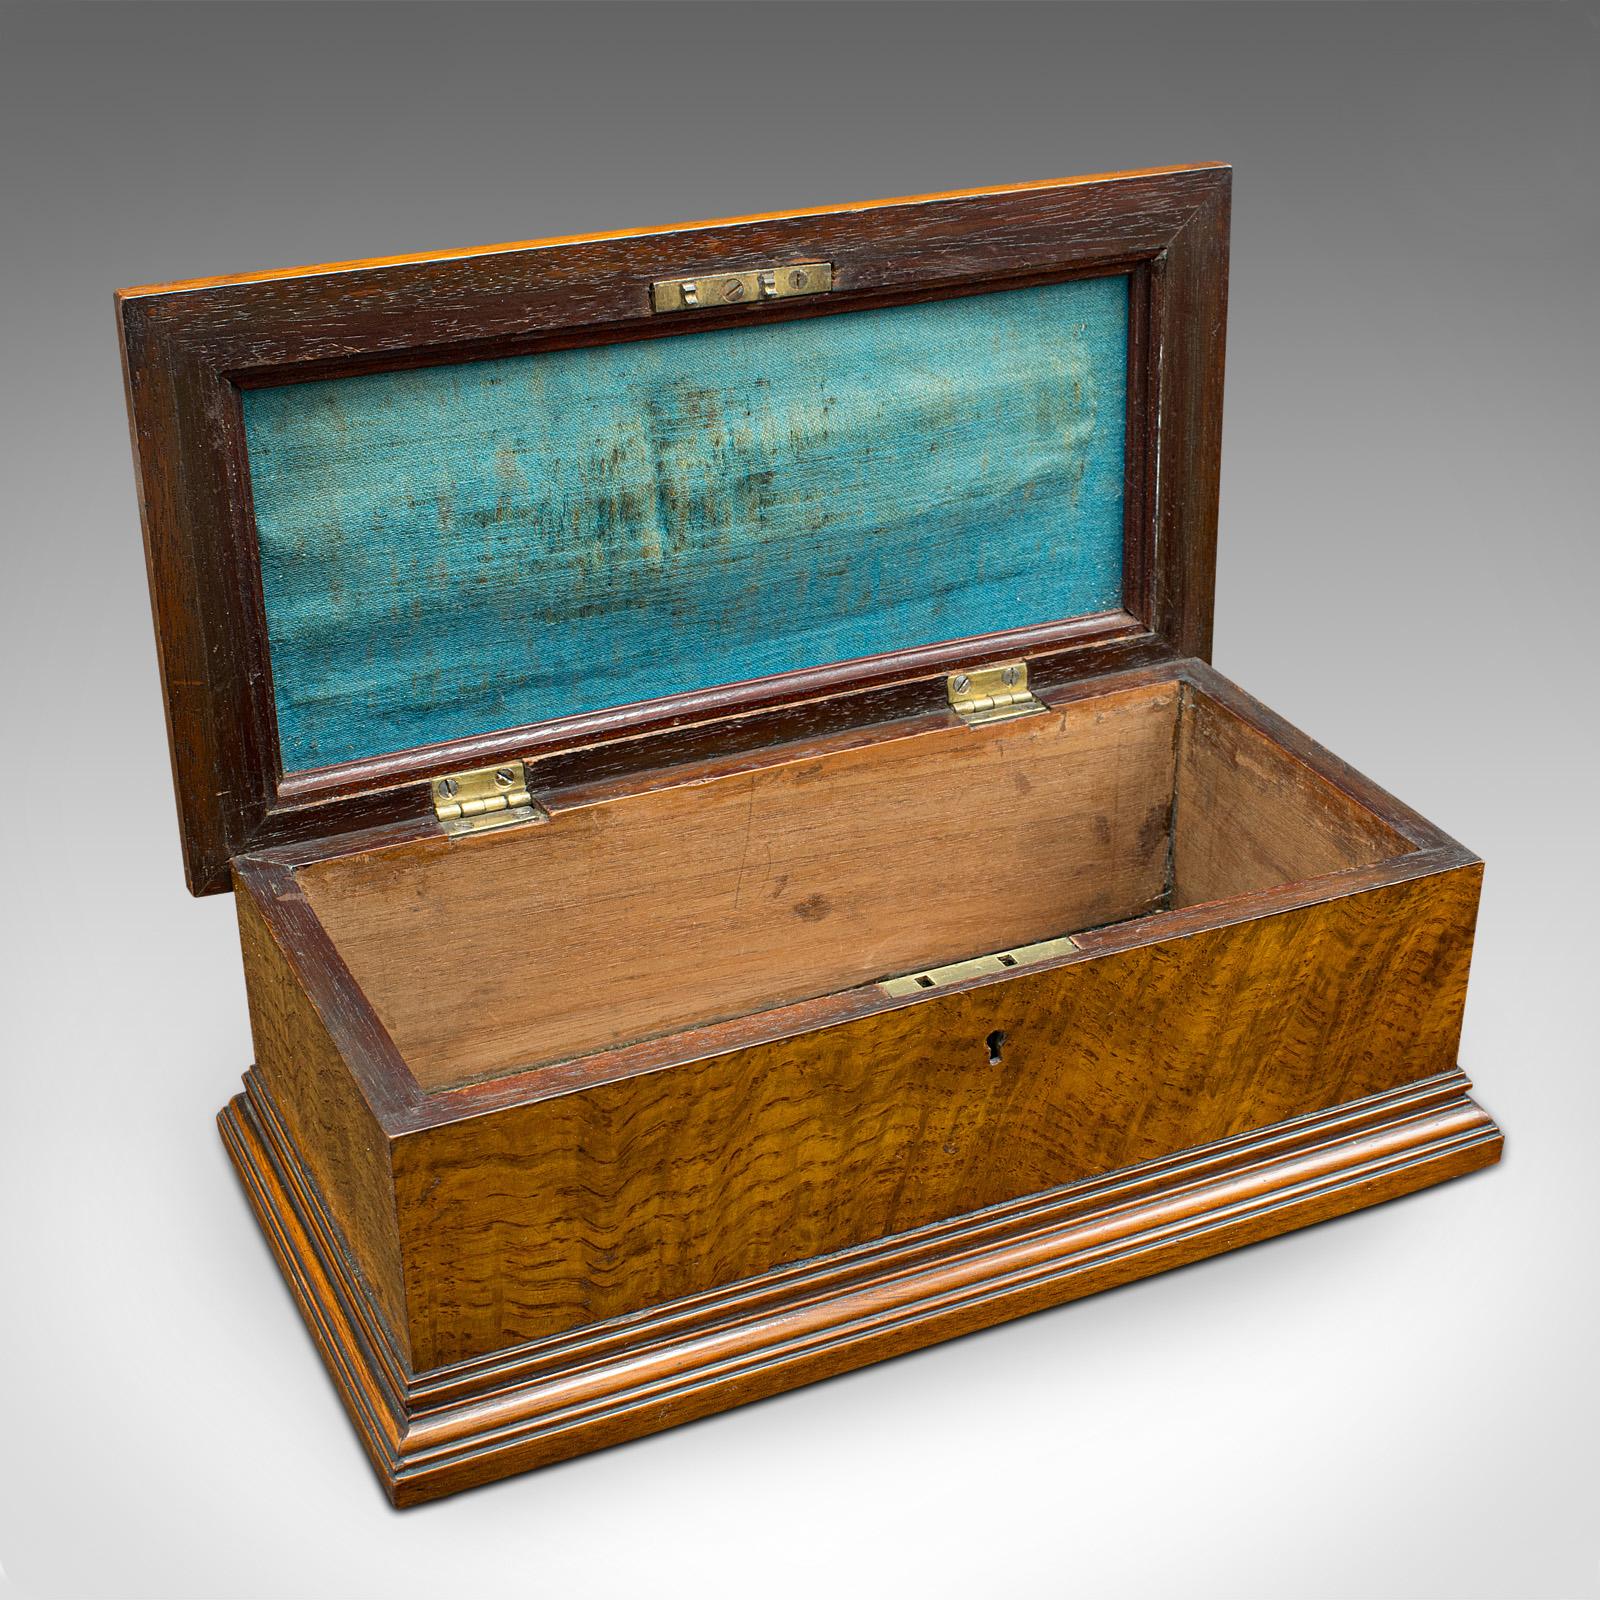 Il s'agit d'une ancienne boîte à gants pour homme. Coffret à souvenirs ou à cartes en forme de sarcophage en noyer, datant du milieu de la période victorienne, vers 1870.

Une délicieuse fabrication artisanale, idéale pour le meuble d'appoint ou la